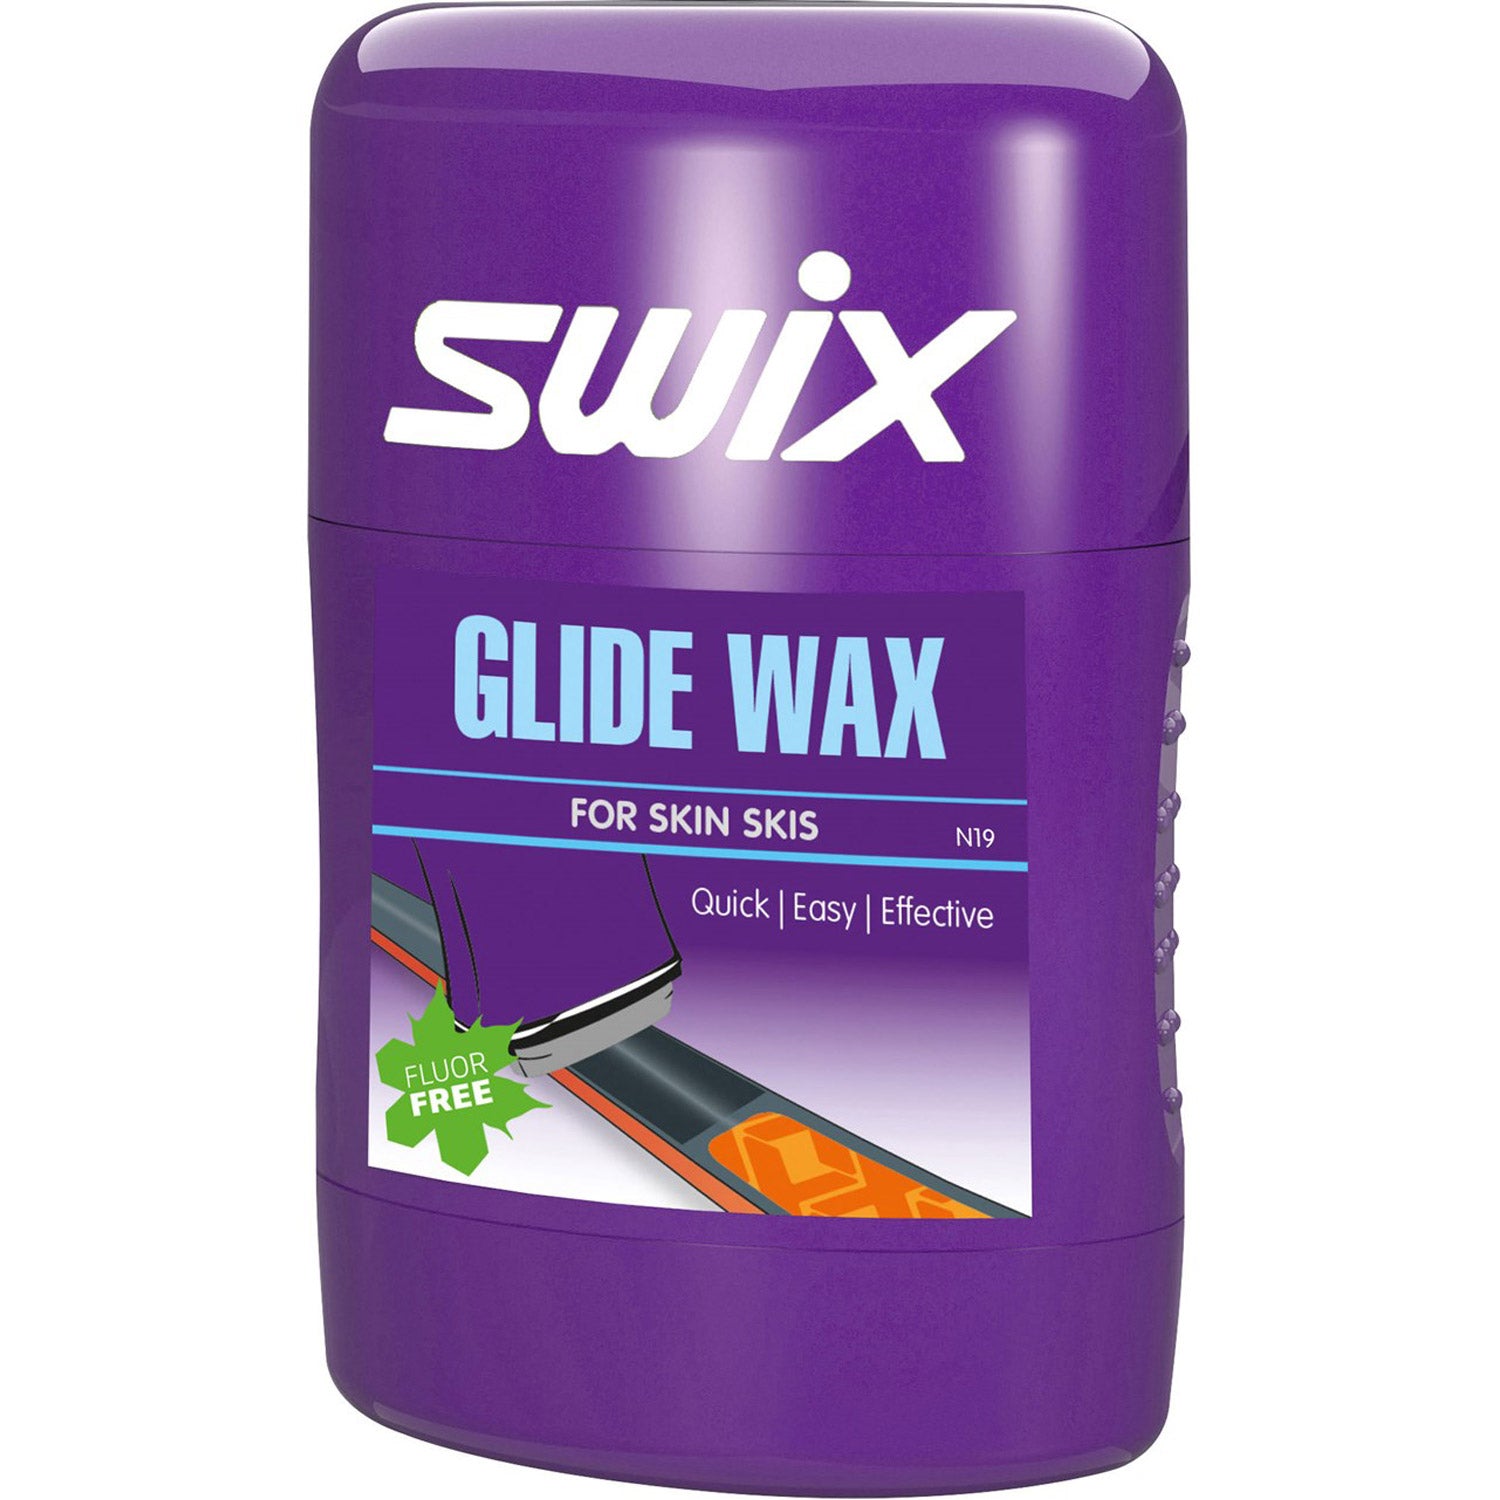 Swix Glide Wax For Skin Skis N19